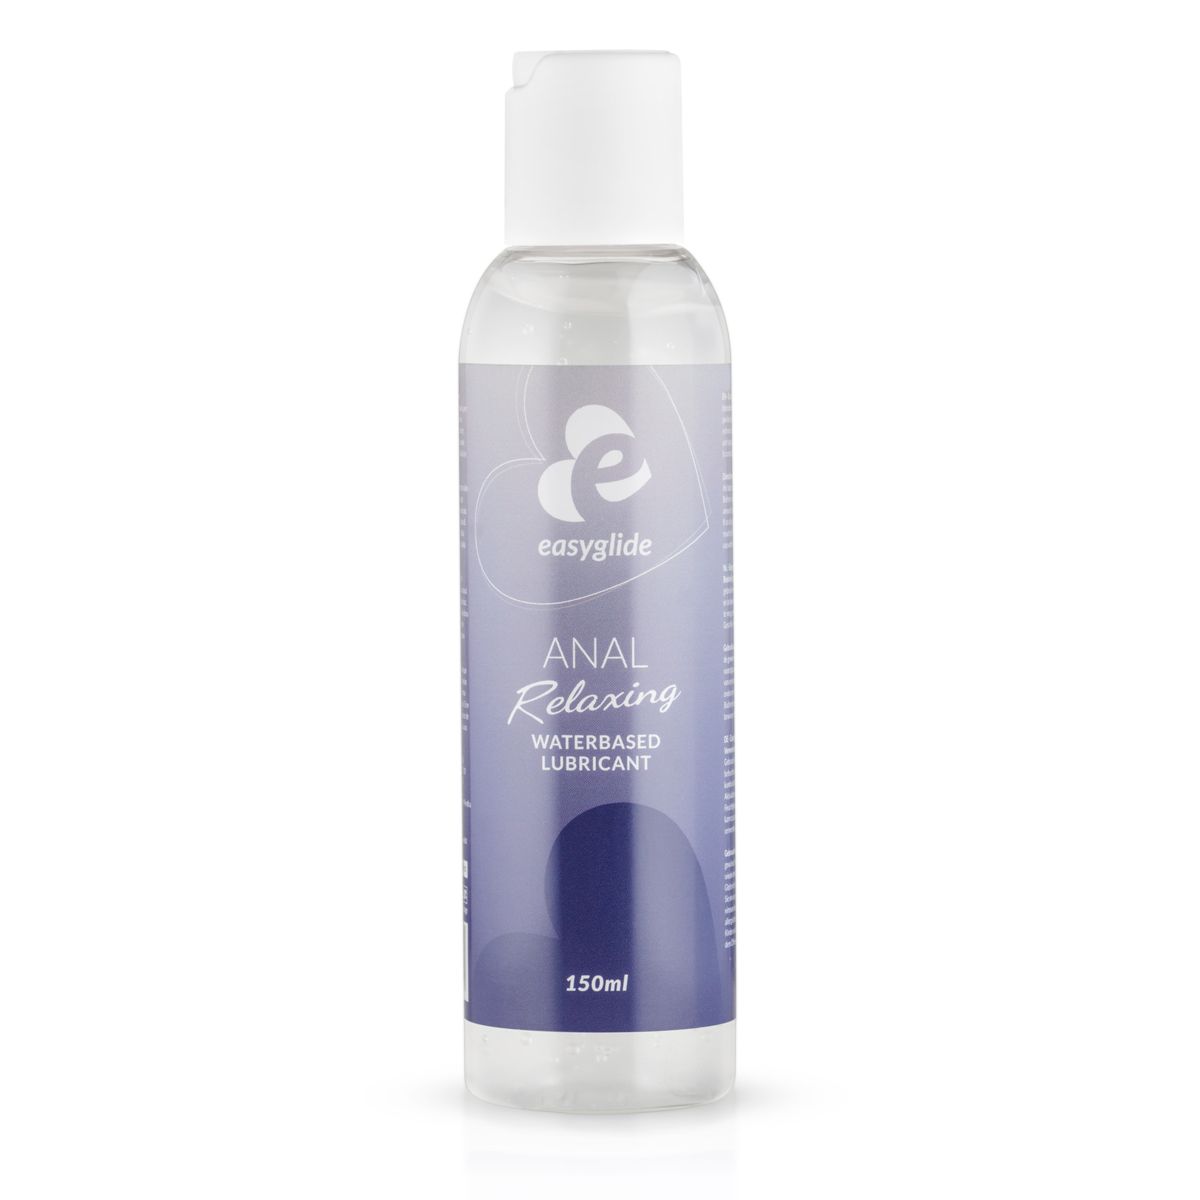 EasyGlide Anal Relaxing Water Based Lube 150ml - Simply Pleasure